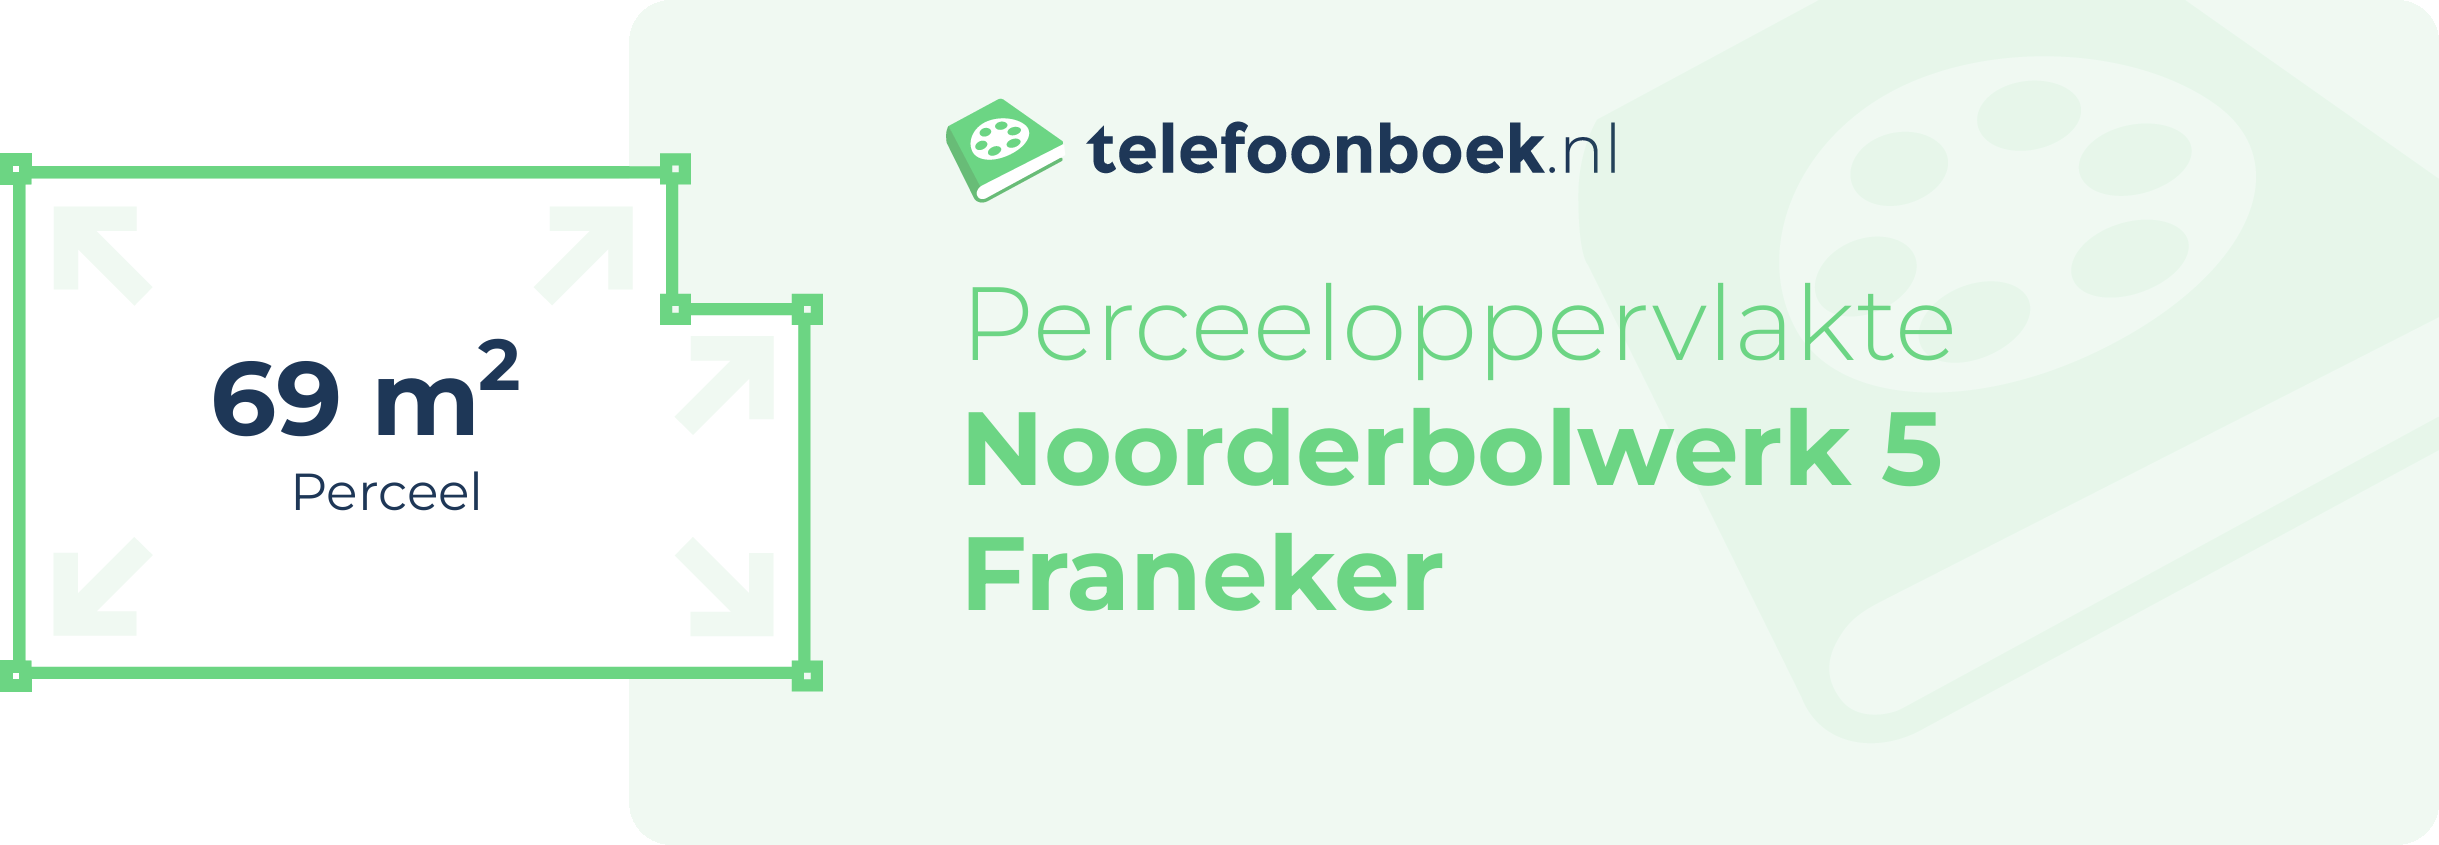 Perceeloppervlakte Noorderbolwerk 5 Franeker